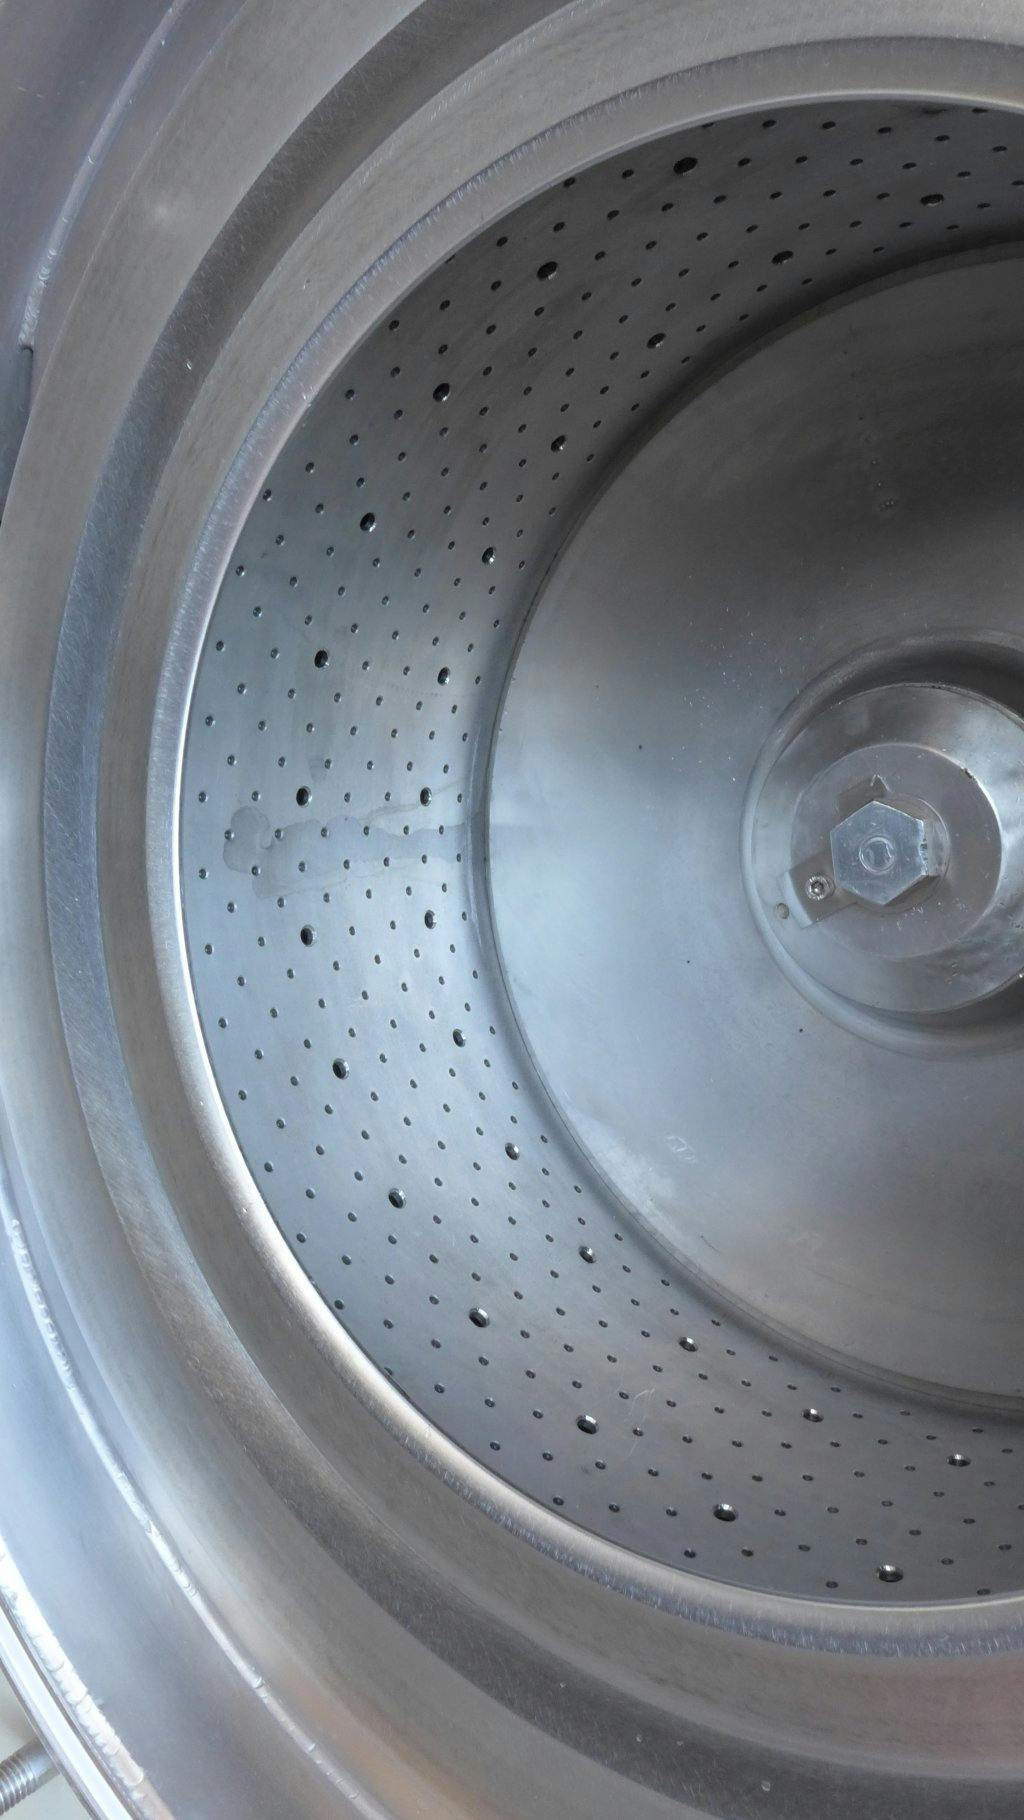 Rousselet EHR 501G - Peeling centrifuge - image 6